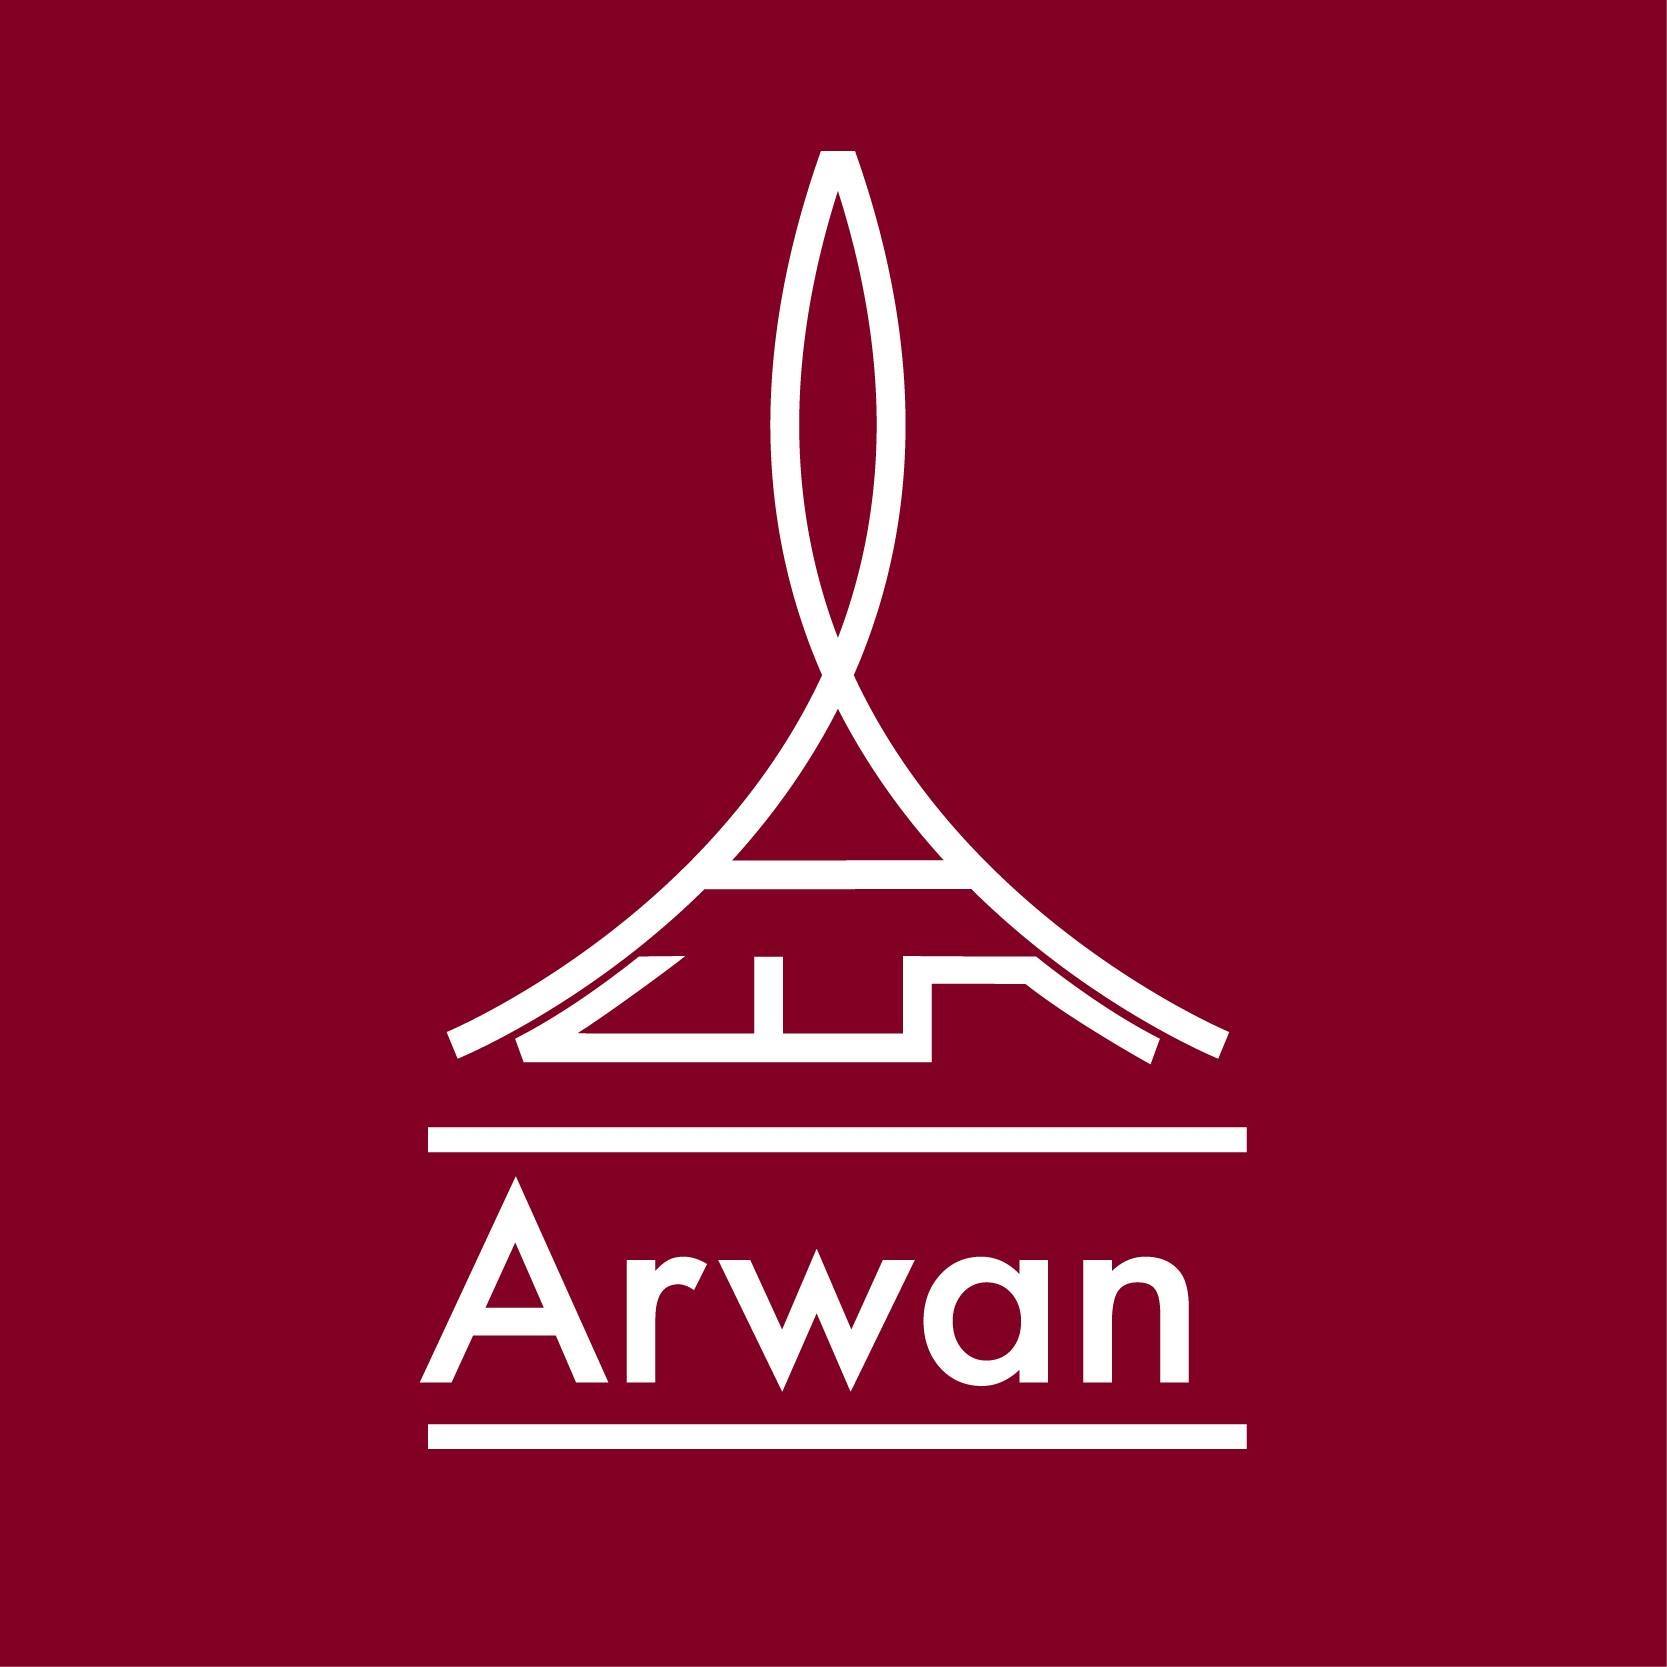 Arwan